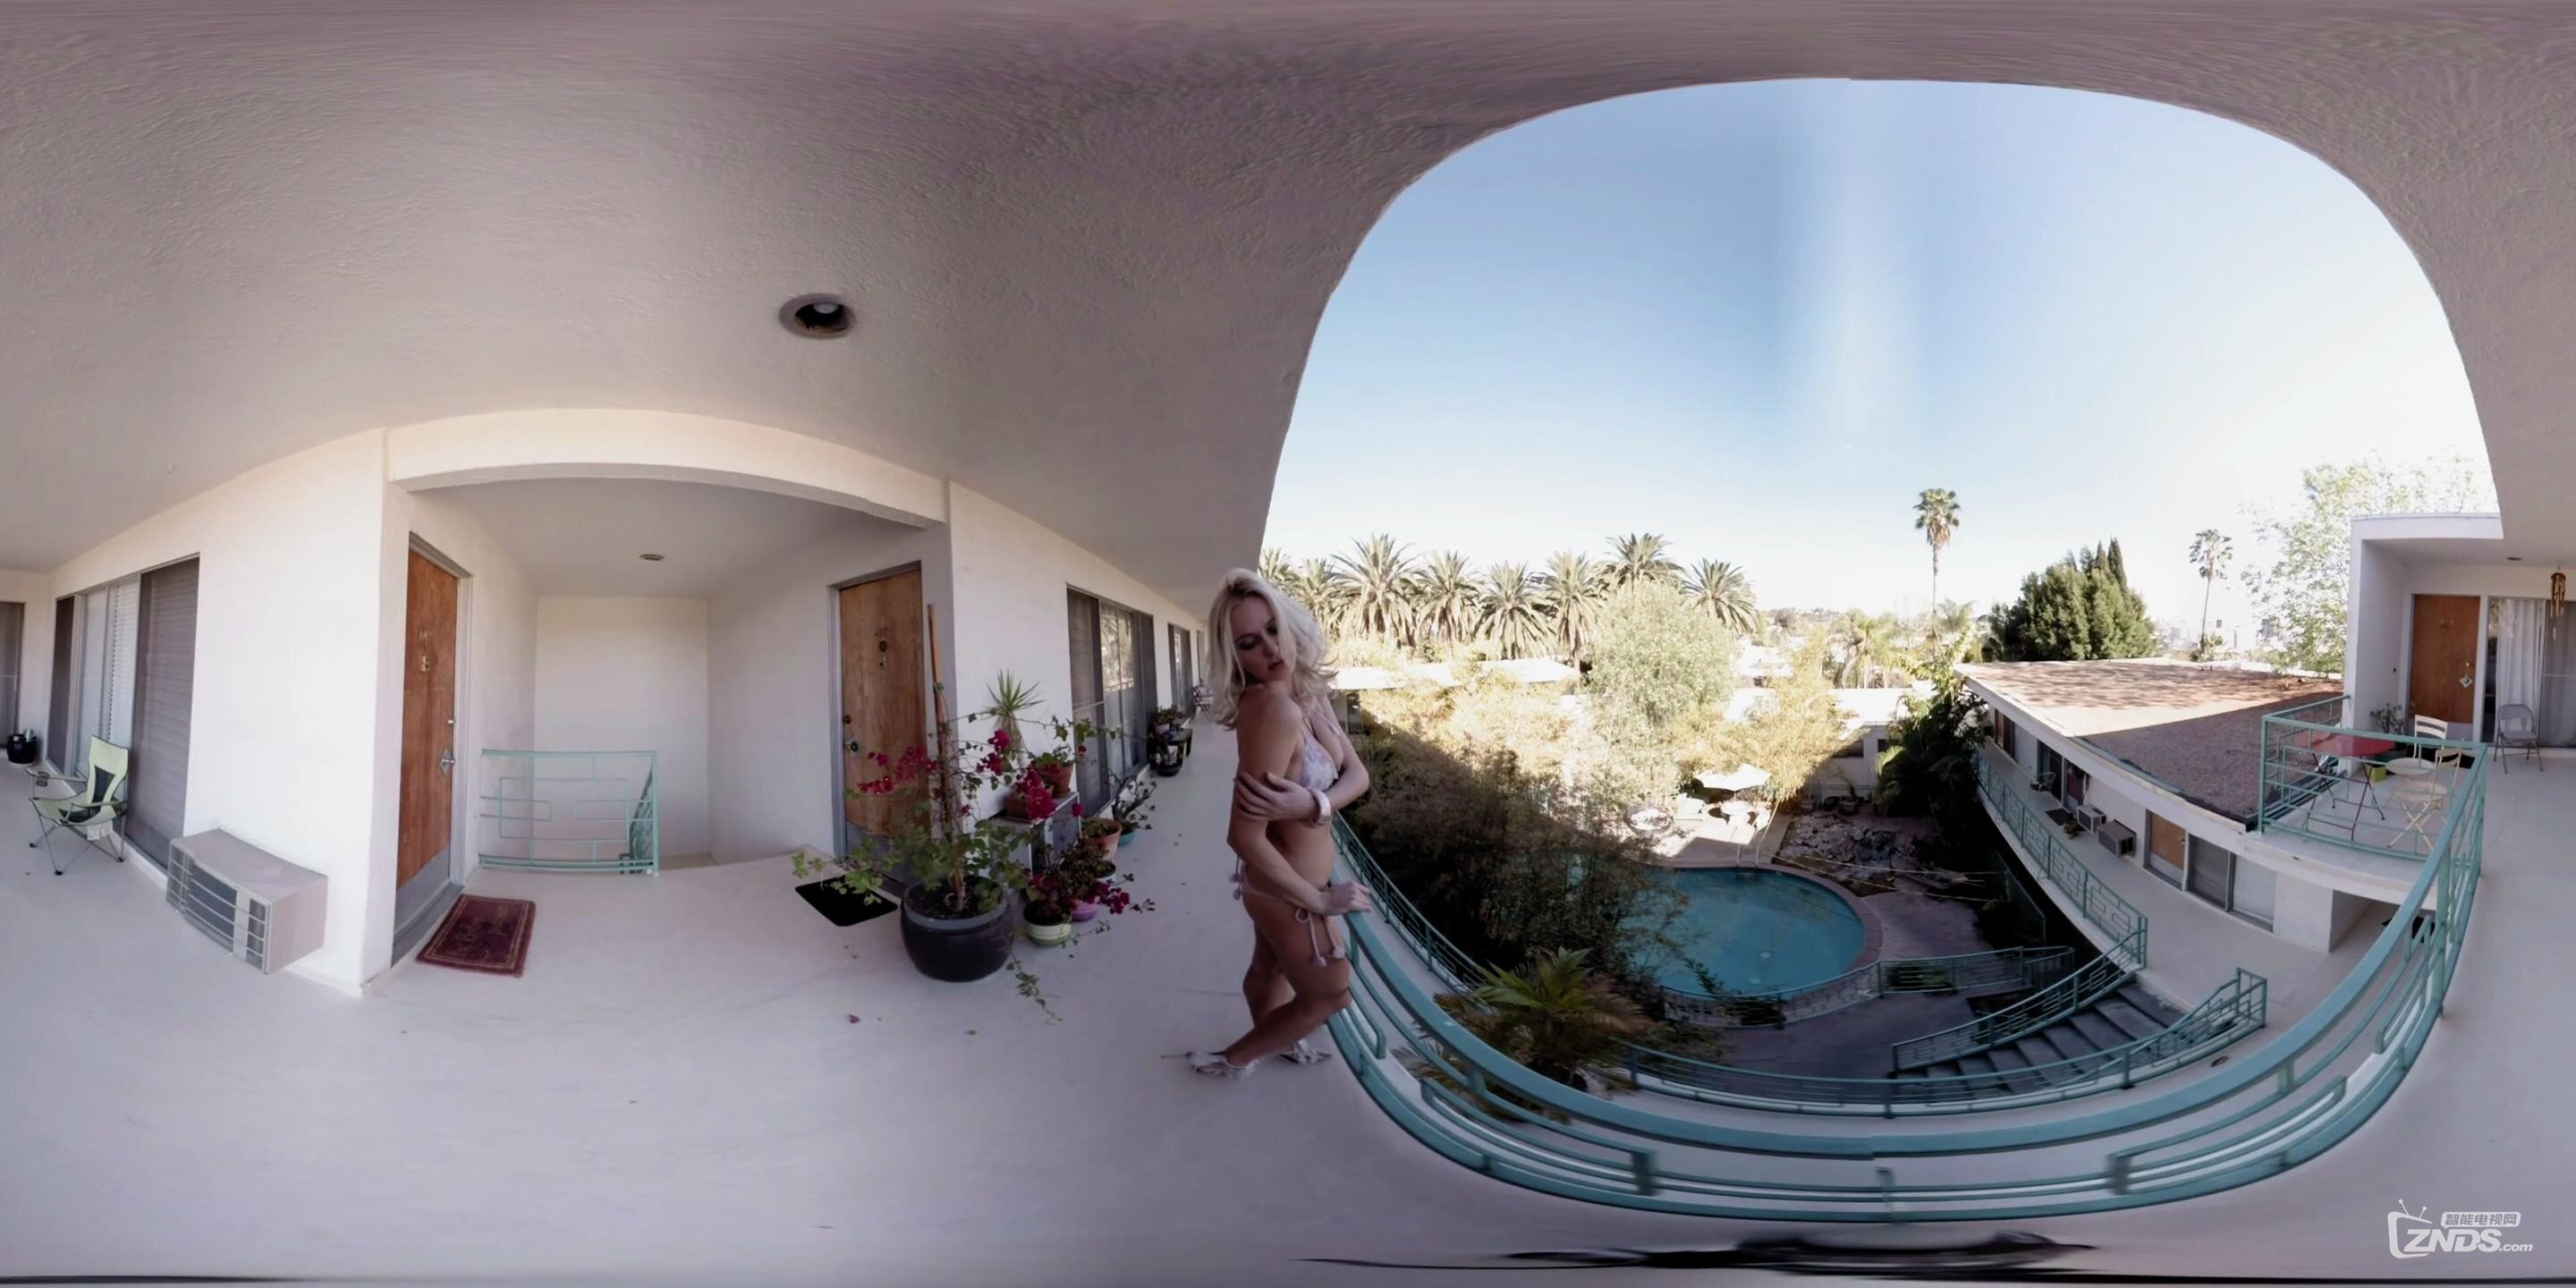 【360度VR全景视频】比坚尼泳衣秀:这泳衣喜